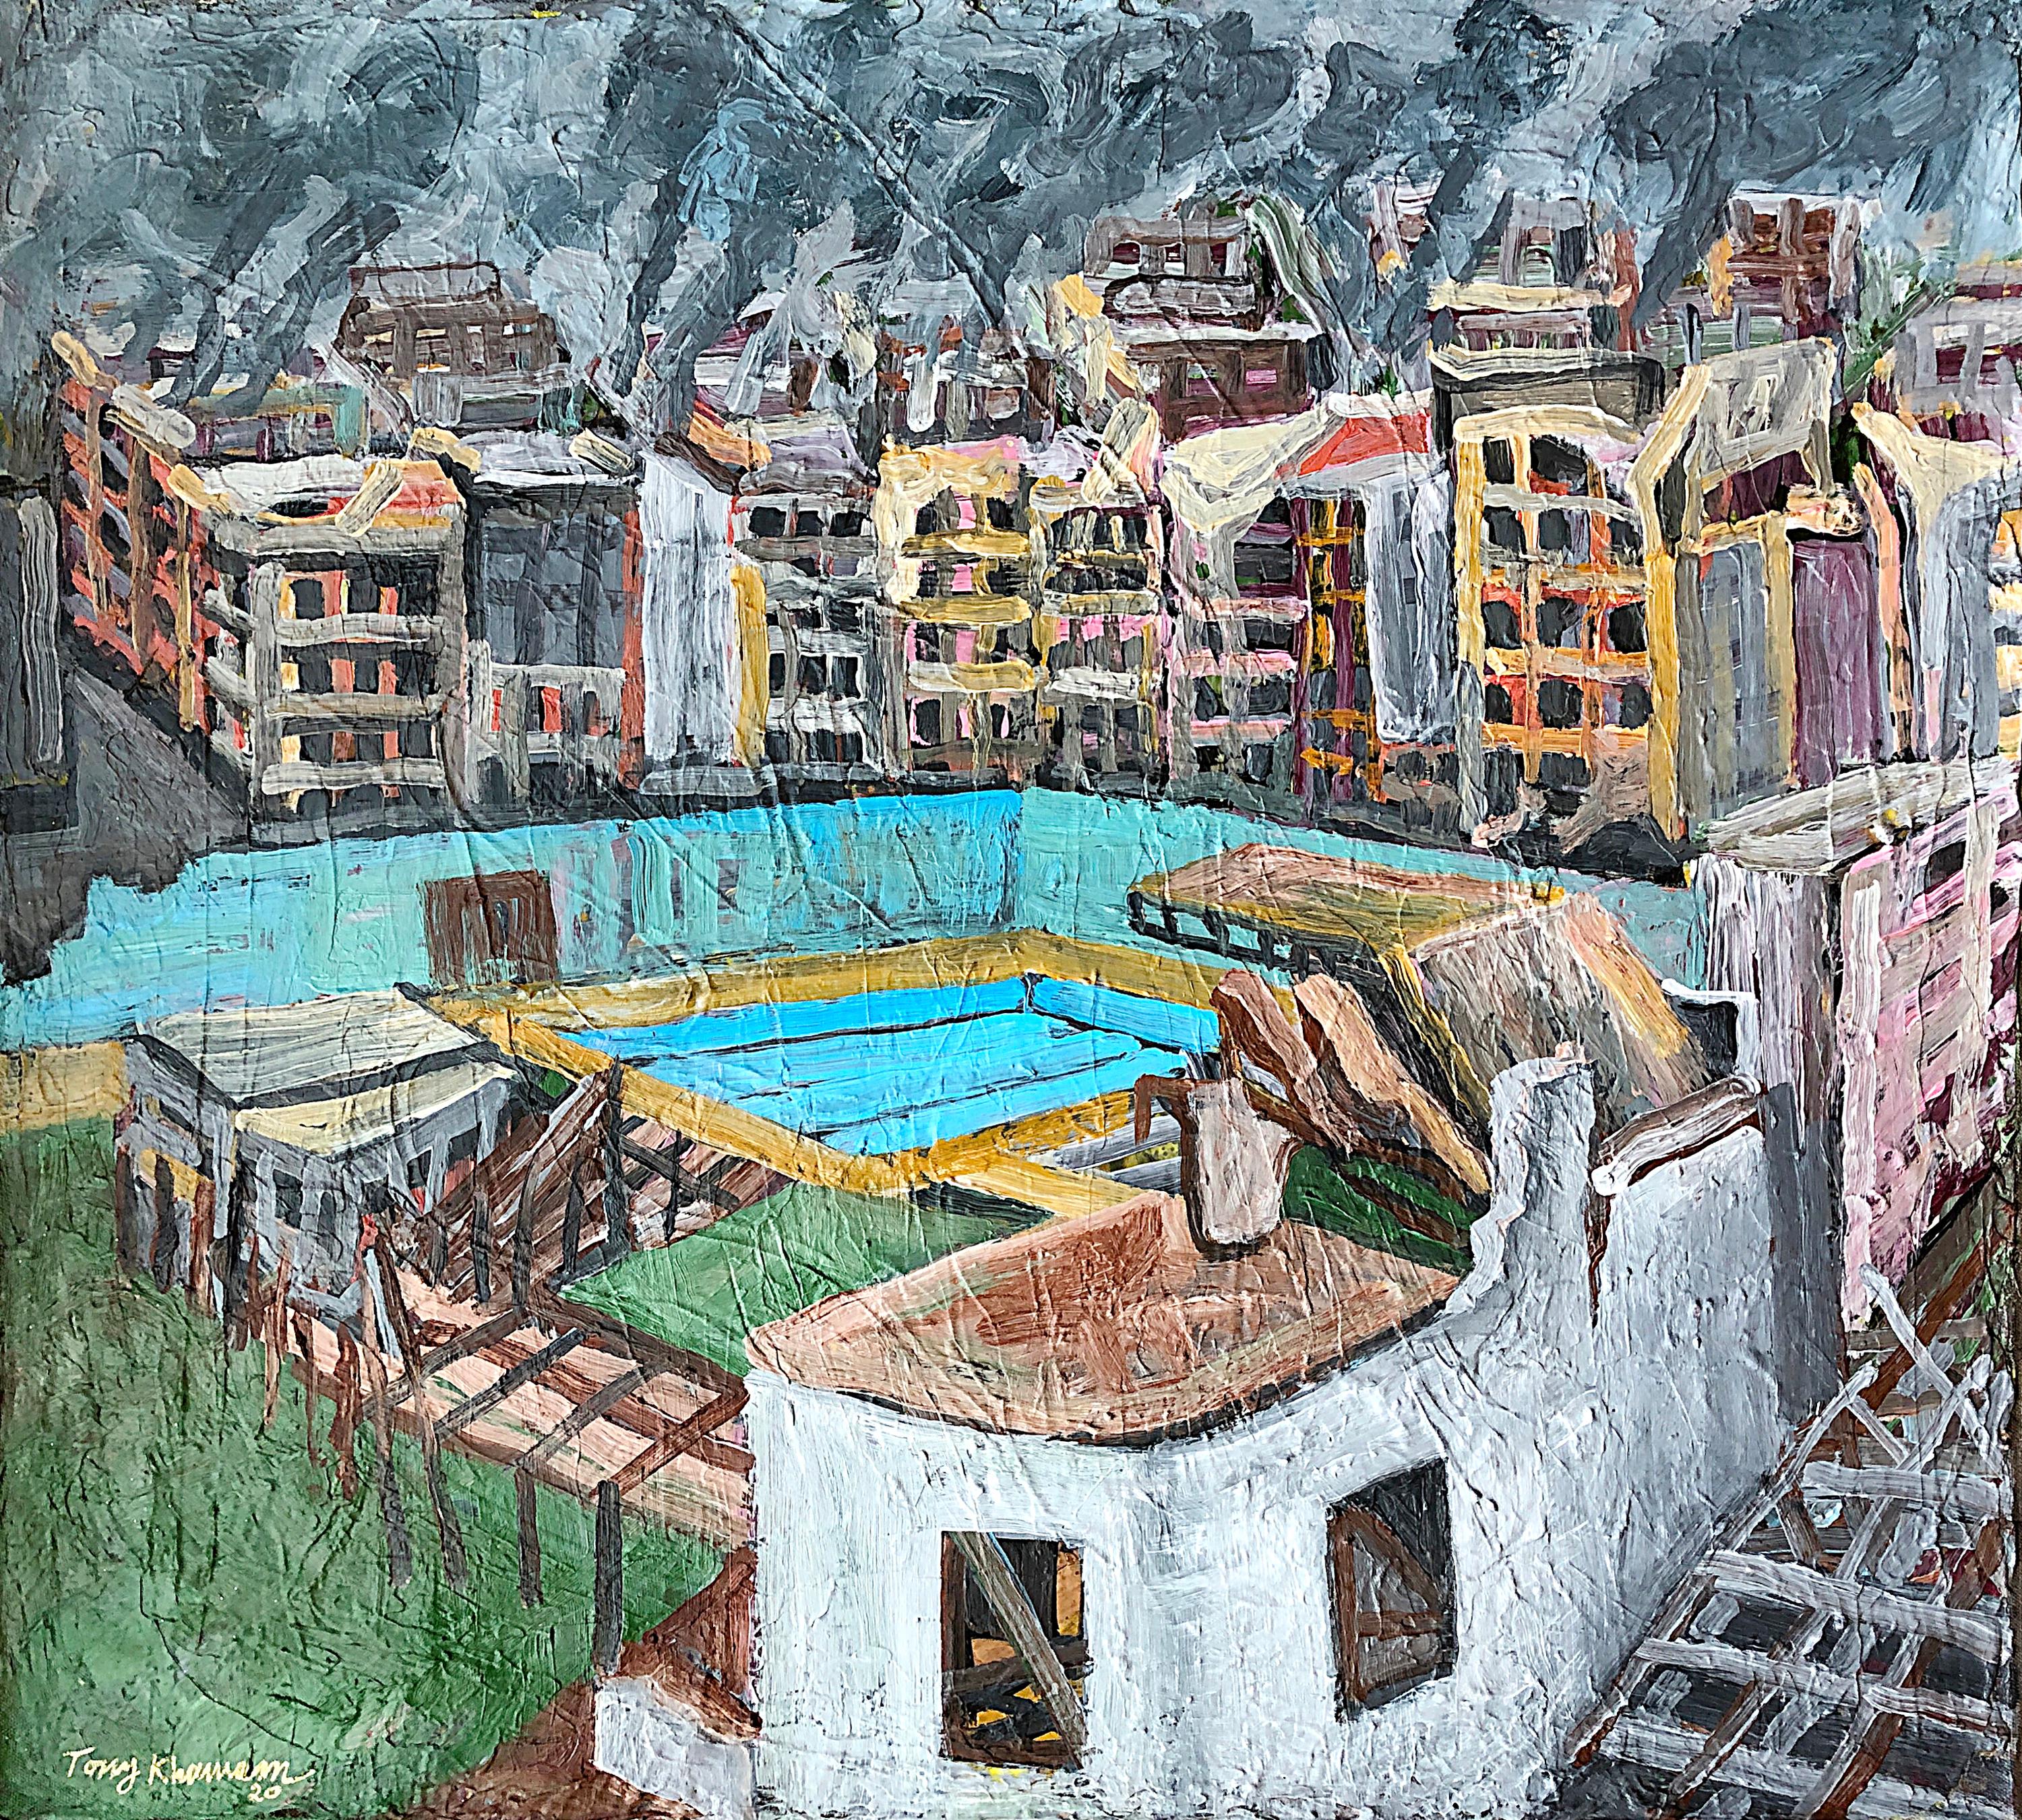 Tony Khawam Abstract Painting - The Forgotten City of Aleppo - No.2